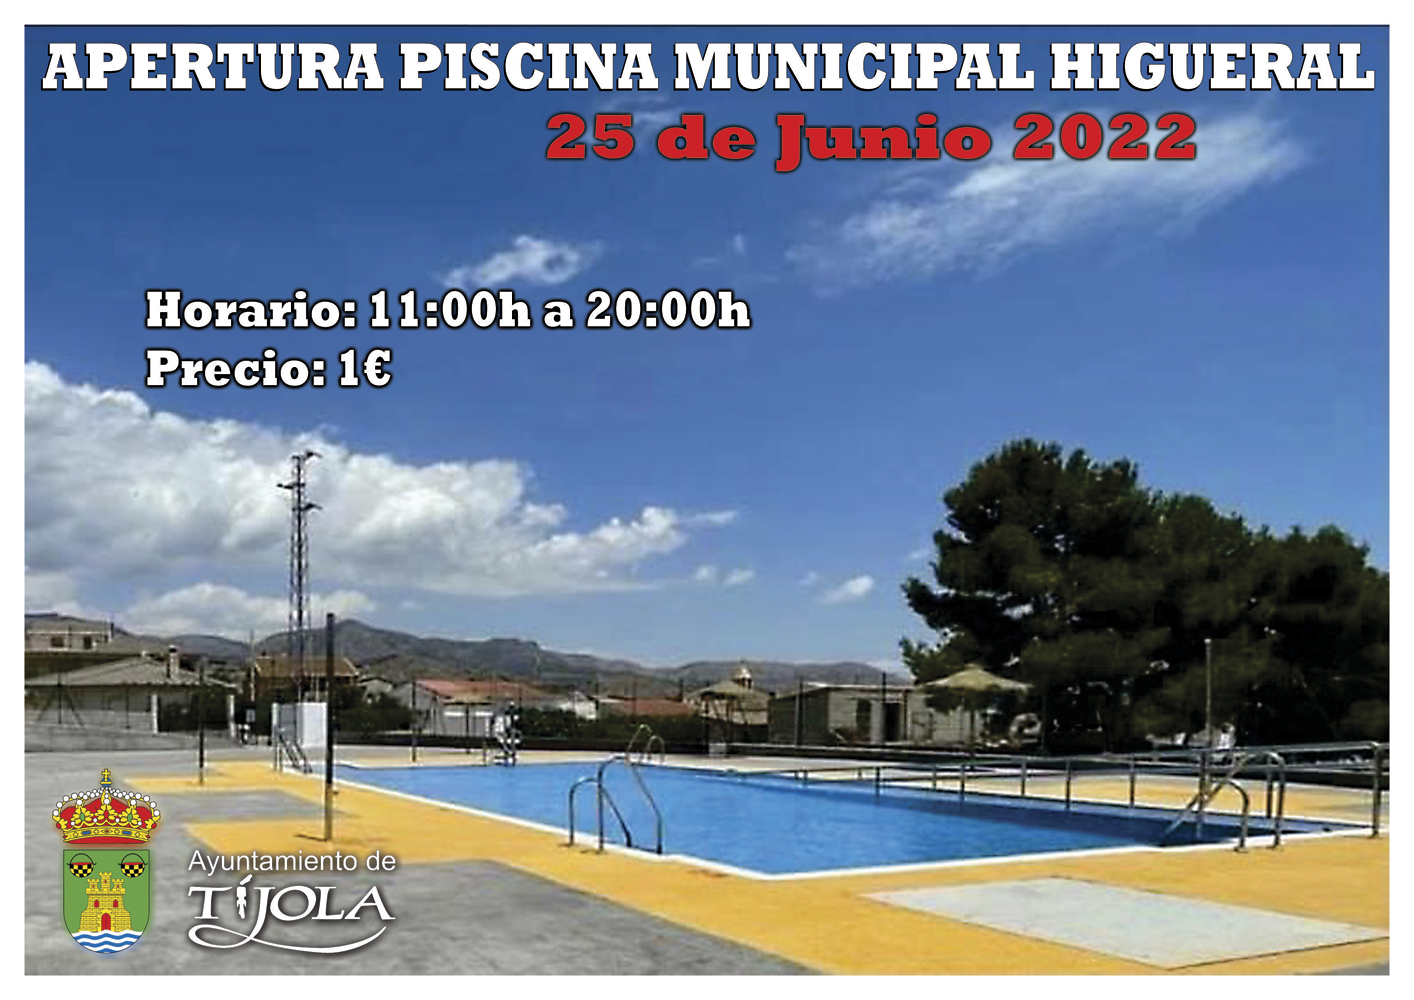 Imagen del Cartel de la Apertura de la Piscina Municipal en Higueral con imagen de la piscina al fondo.